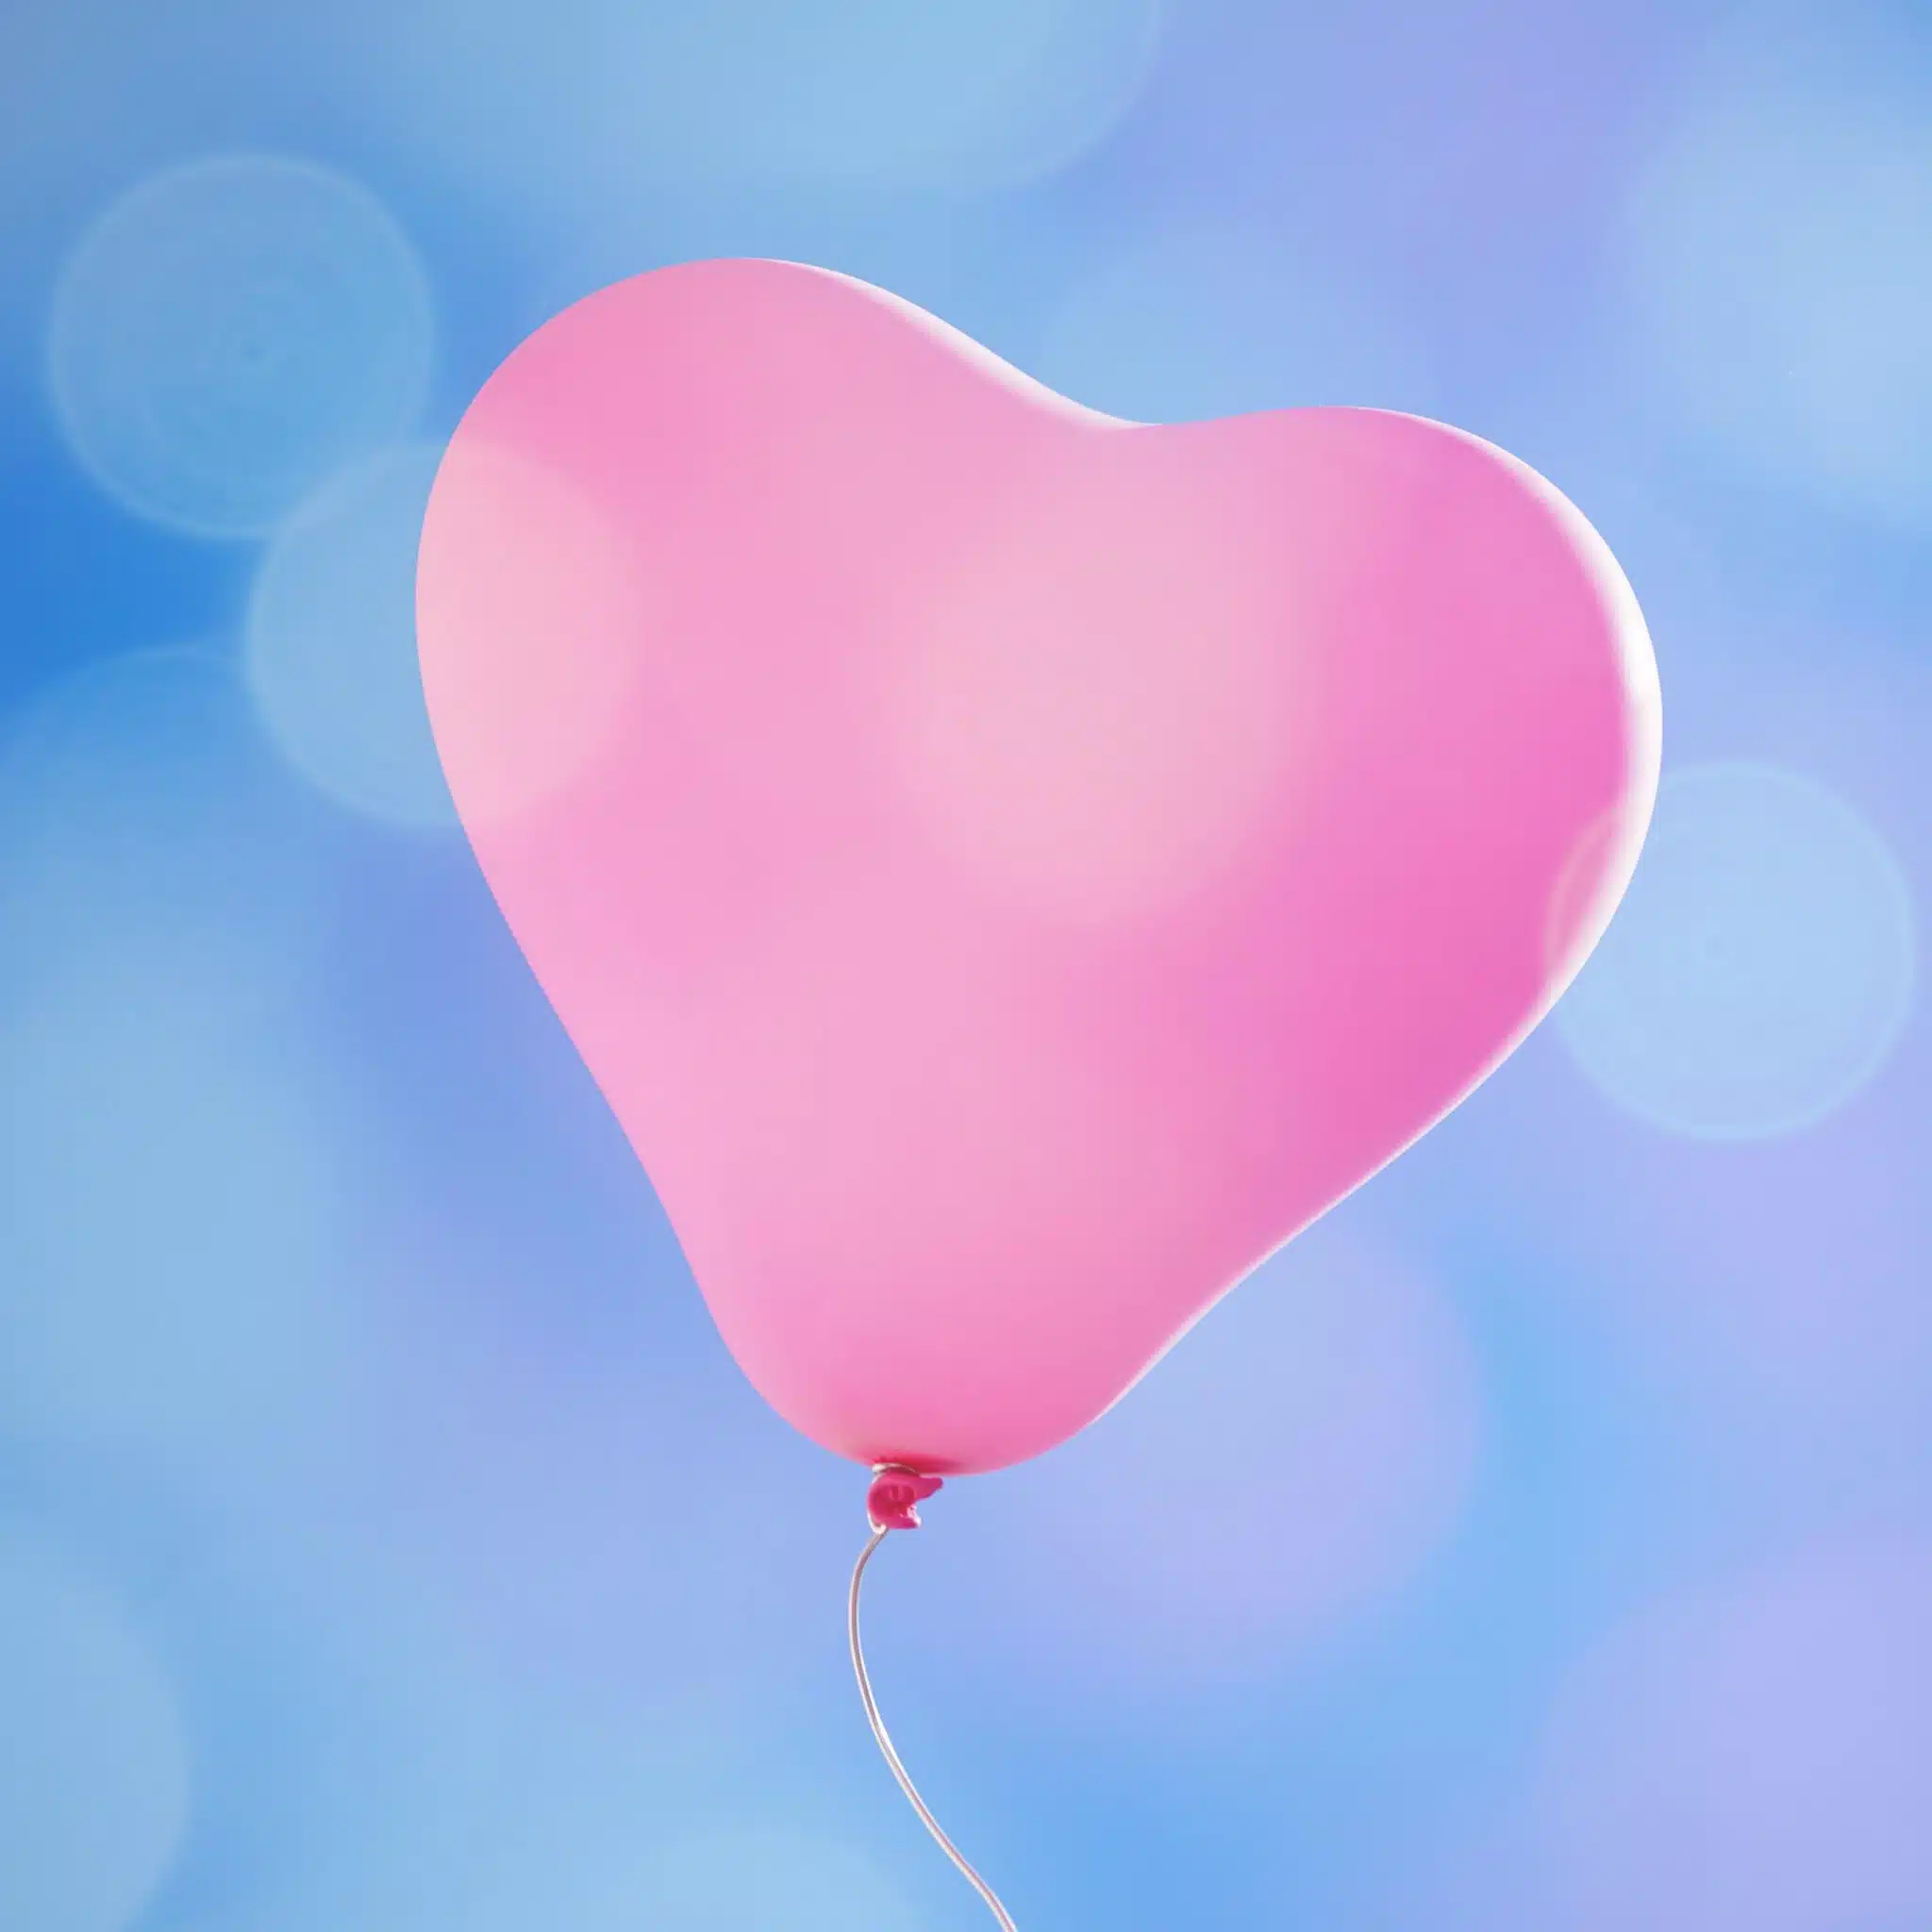 Luftballon, der in den Himmel steigt, als Symbol für Loslassen